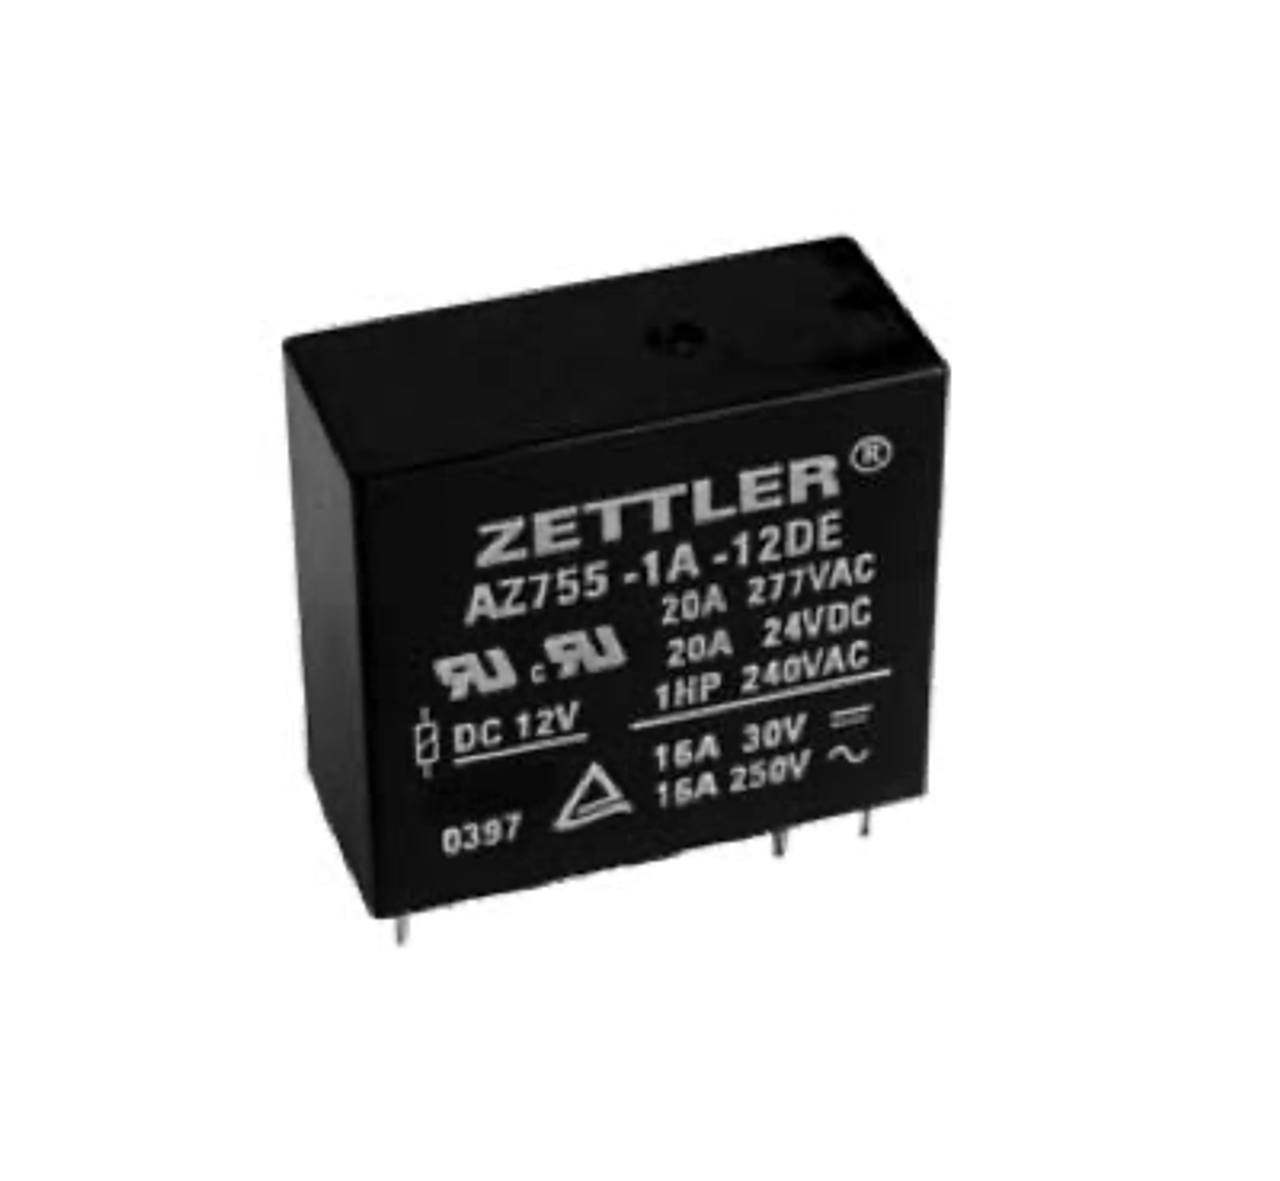 American Zettler AZ755-1A-9D Power Relay